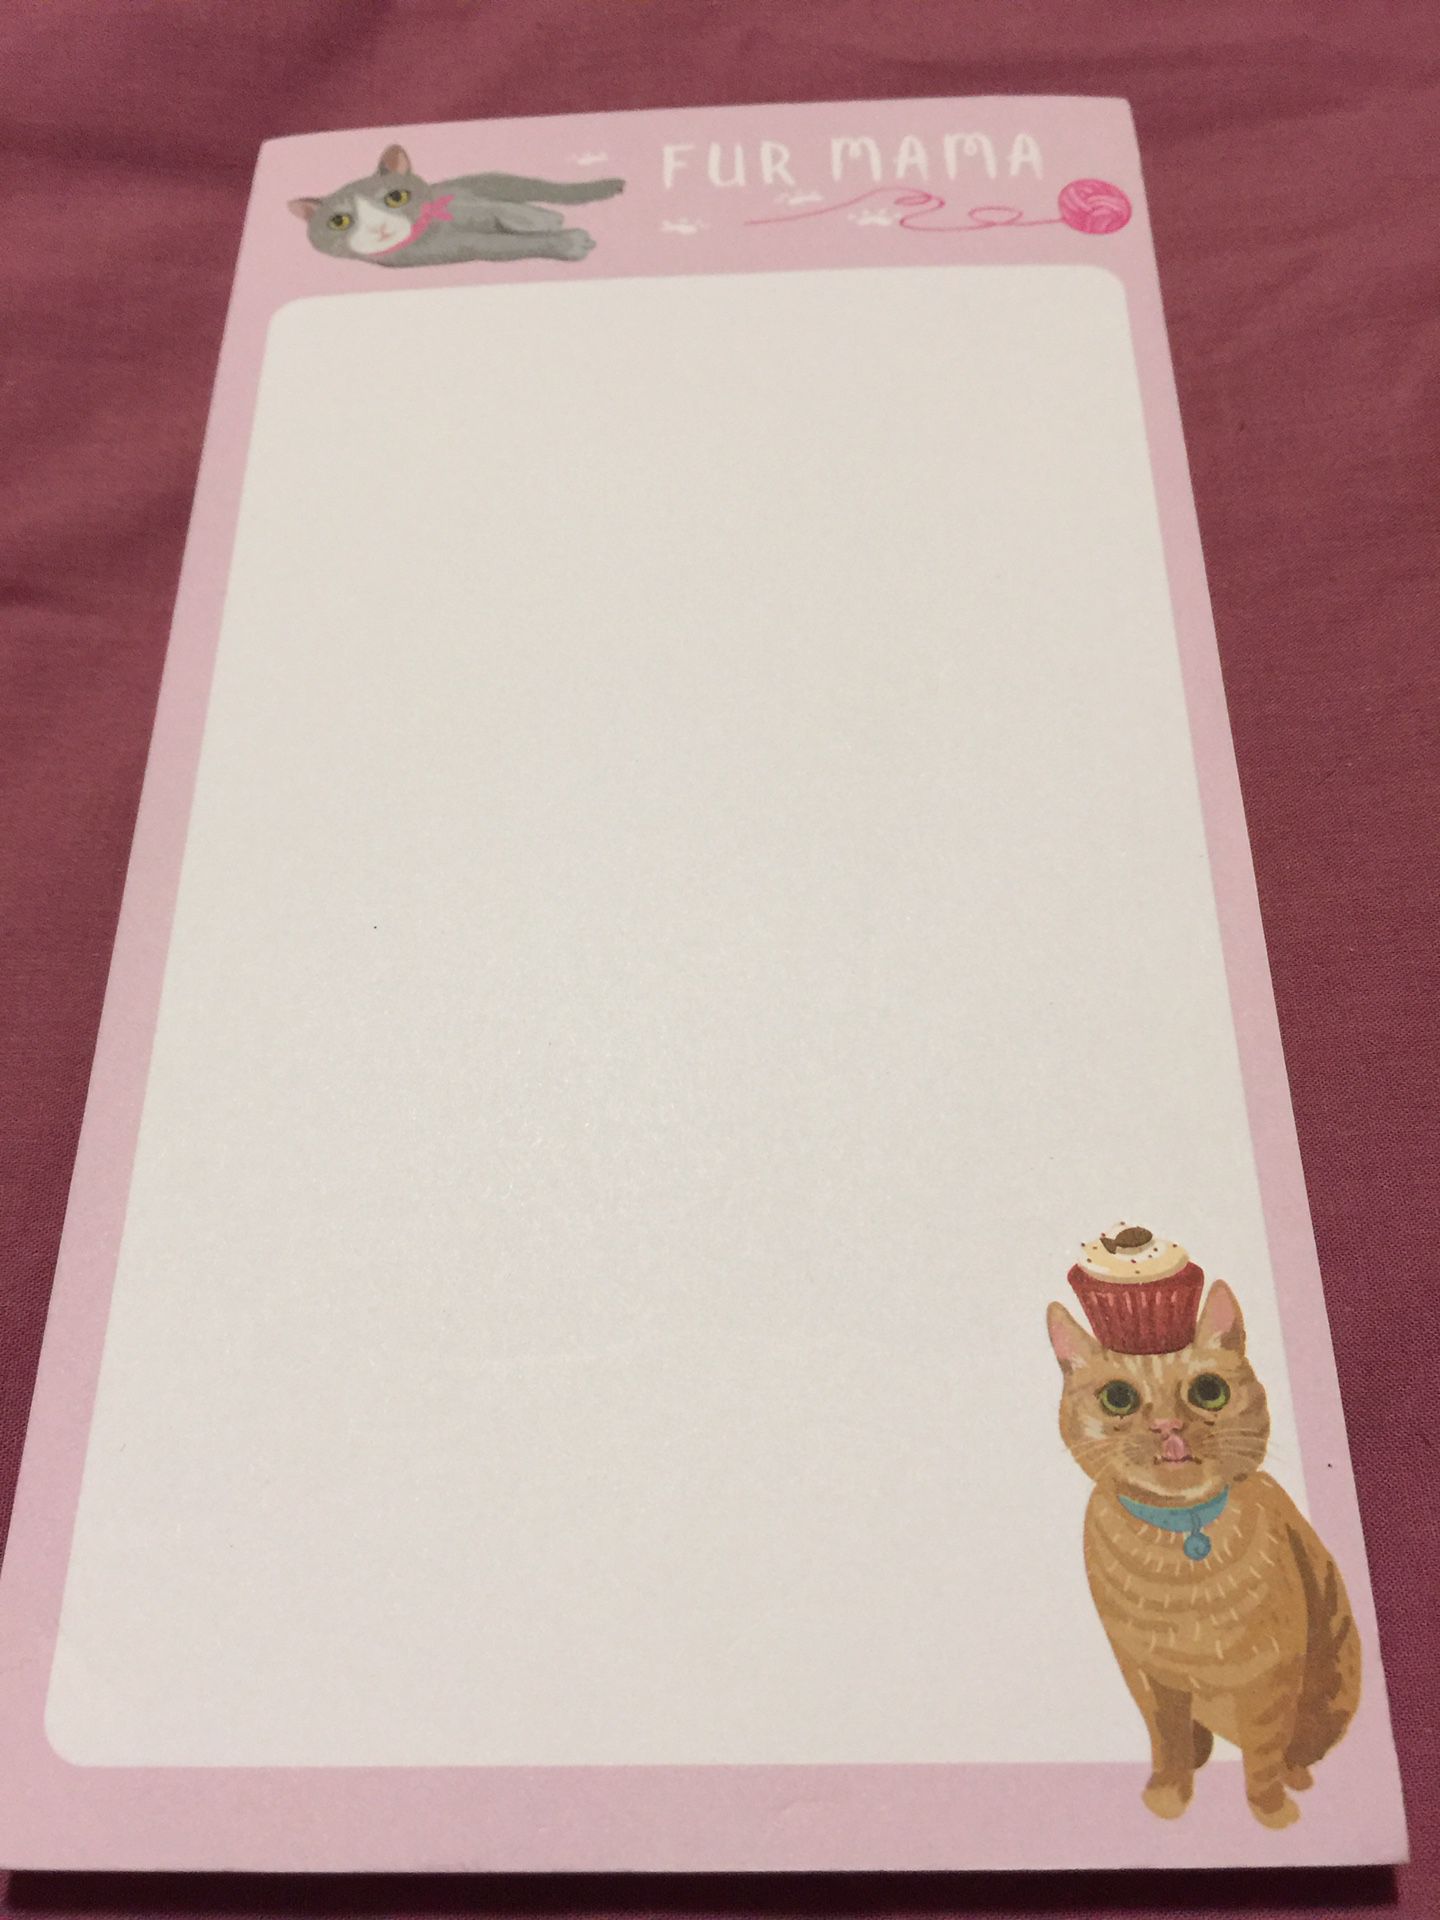 New Cute Cat Memo Pad “Fur Mama” $1.00 ***SALE PENDING ***